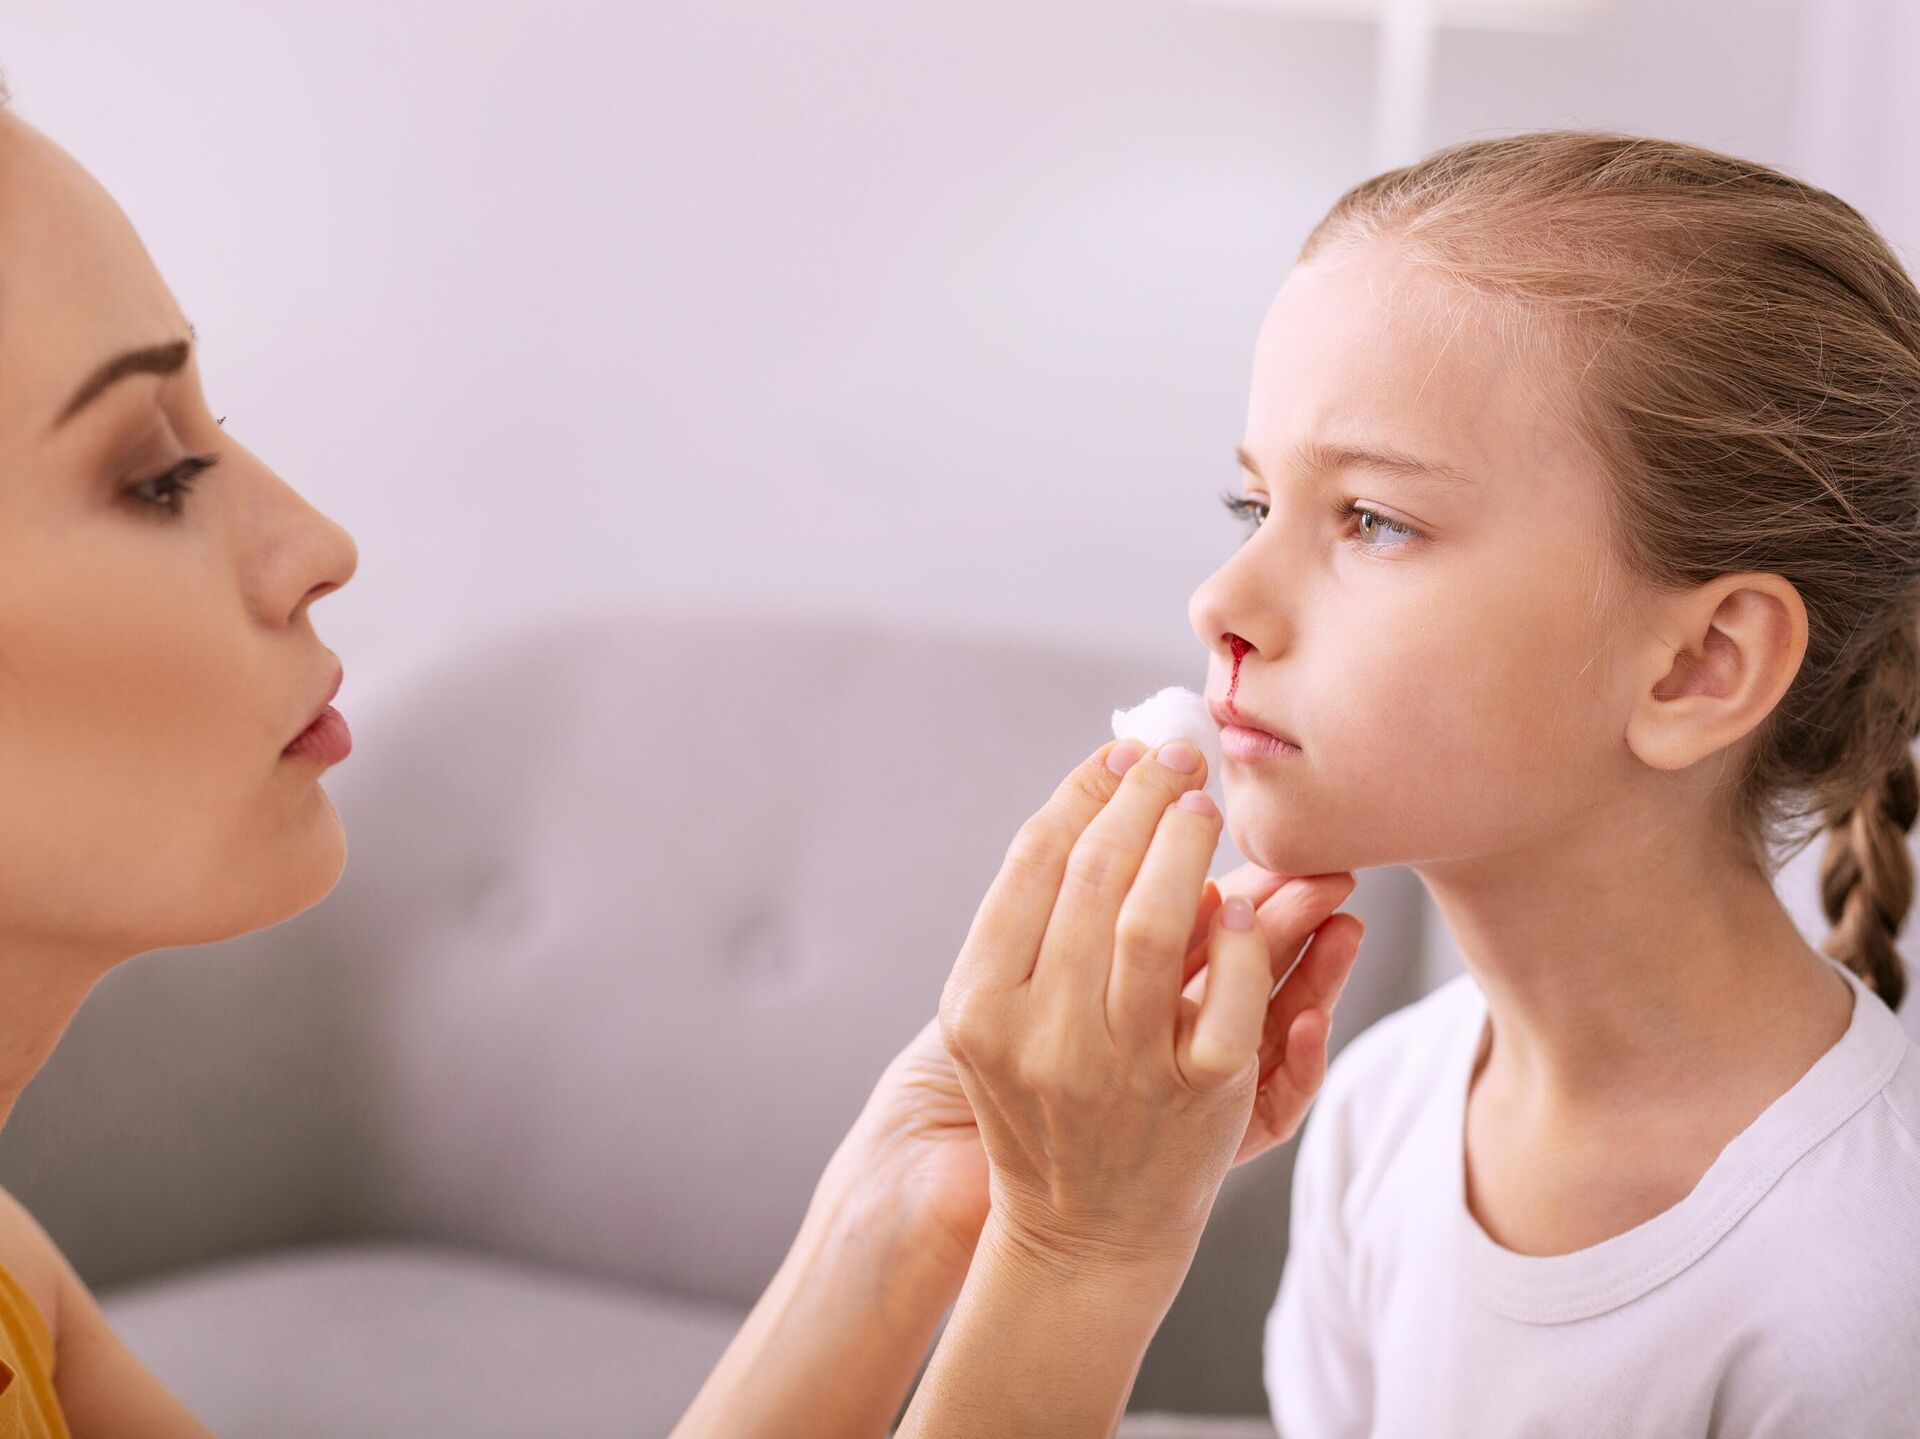 Носовое кровотечение у детей. Что нужно знать